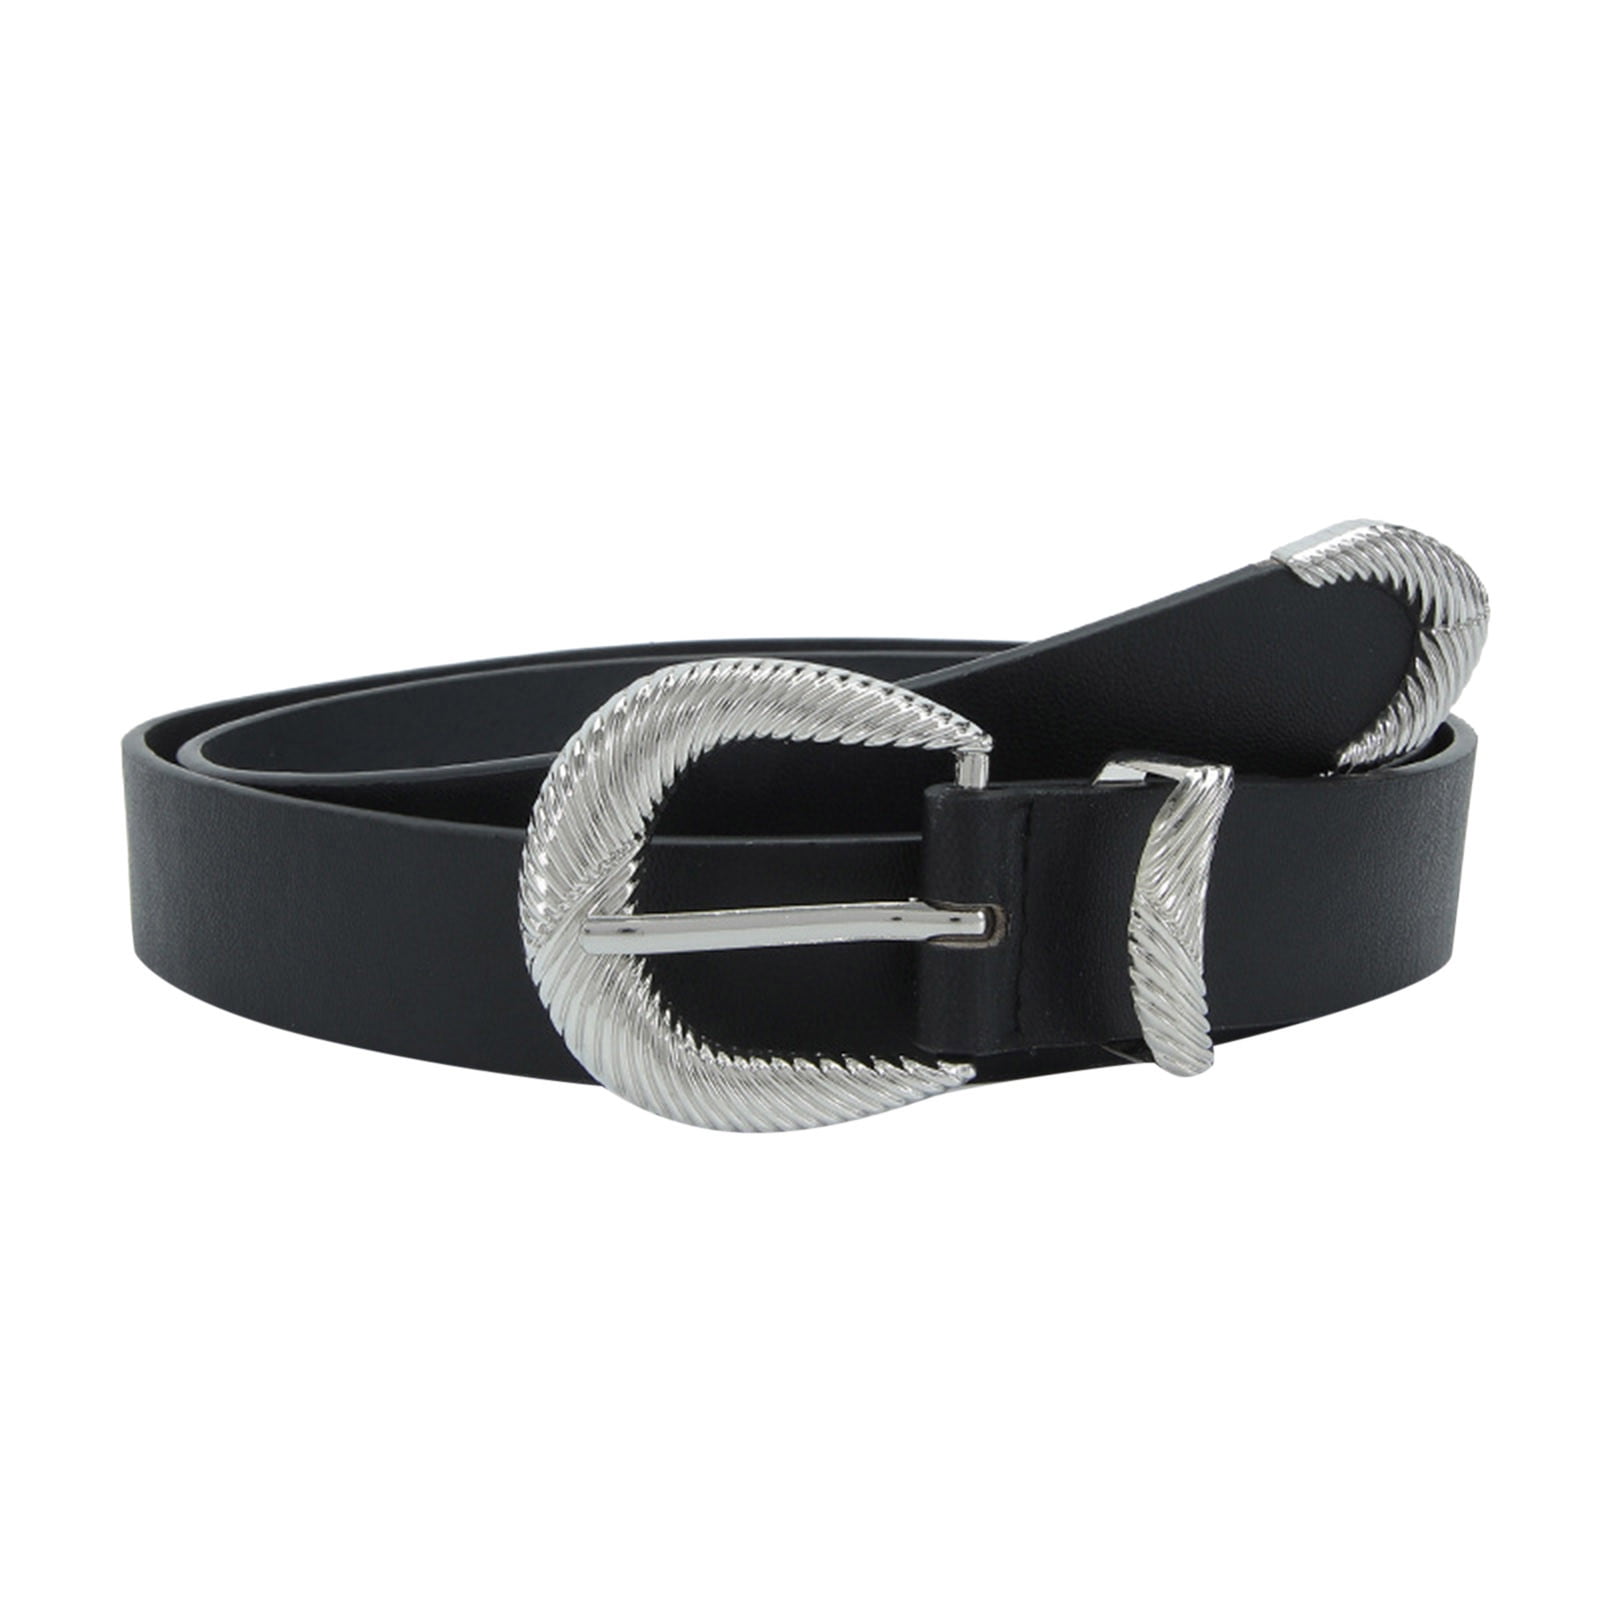 ASEIDFNSA Chain Link Belt for Men Belt Bag for Women Women Leather